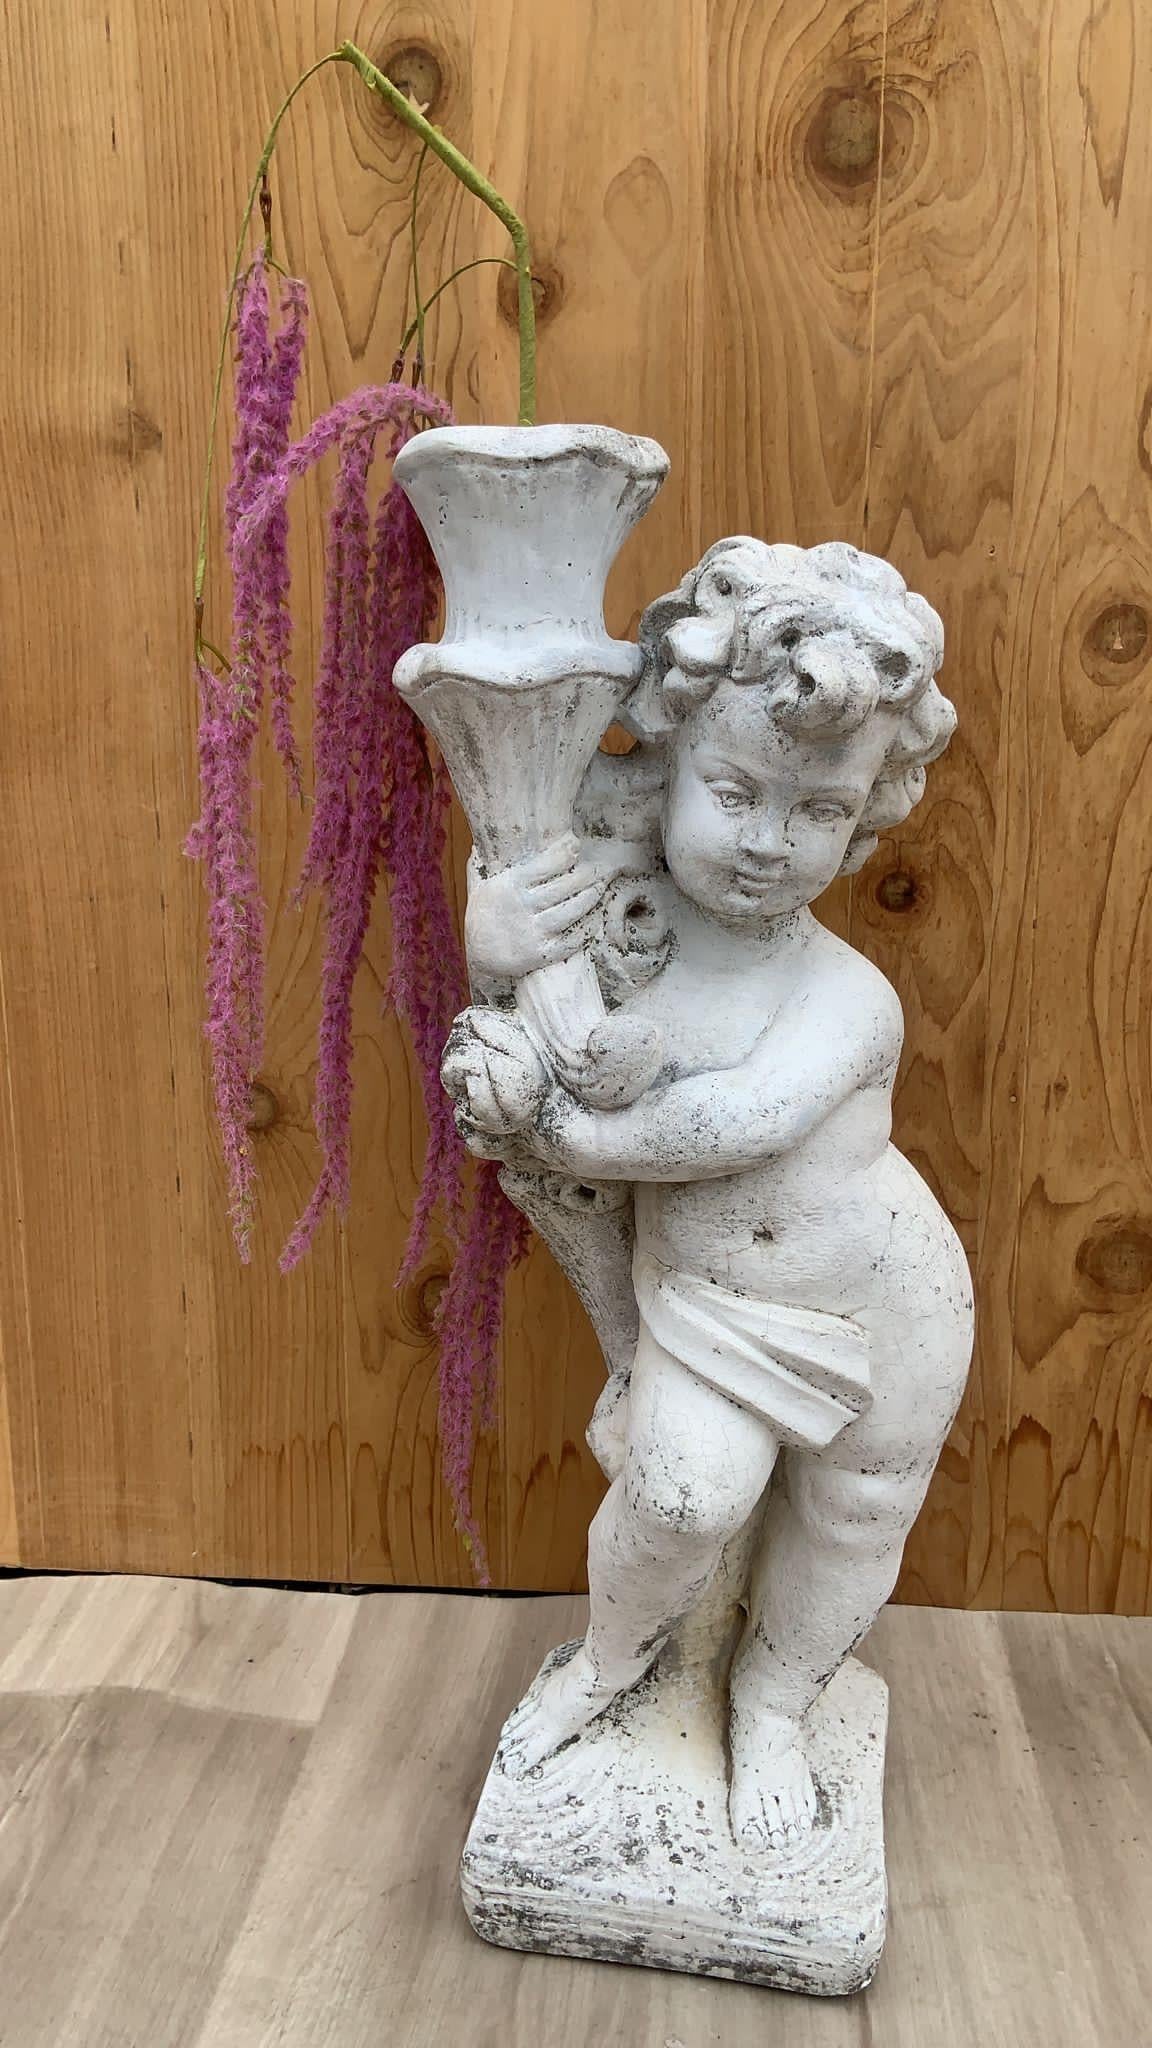 Statue de jardin néoclassique vintage d'un chérubin/de Patti

Provenant d'un beau domaine du Sud, âgé d'environ 50 ans. Stupéfiante statue de jardin néoclassique représentant des chérubins/putti.

Nous avons d'autres statues différentes achetées à